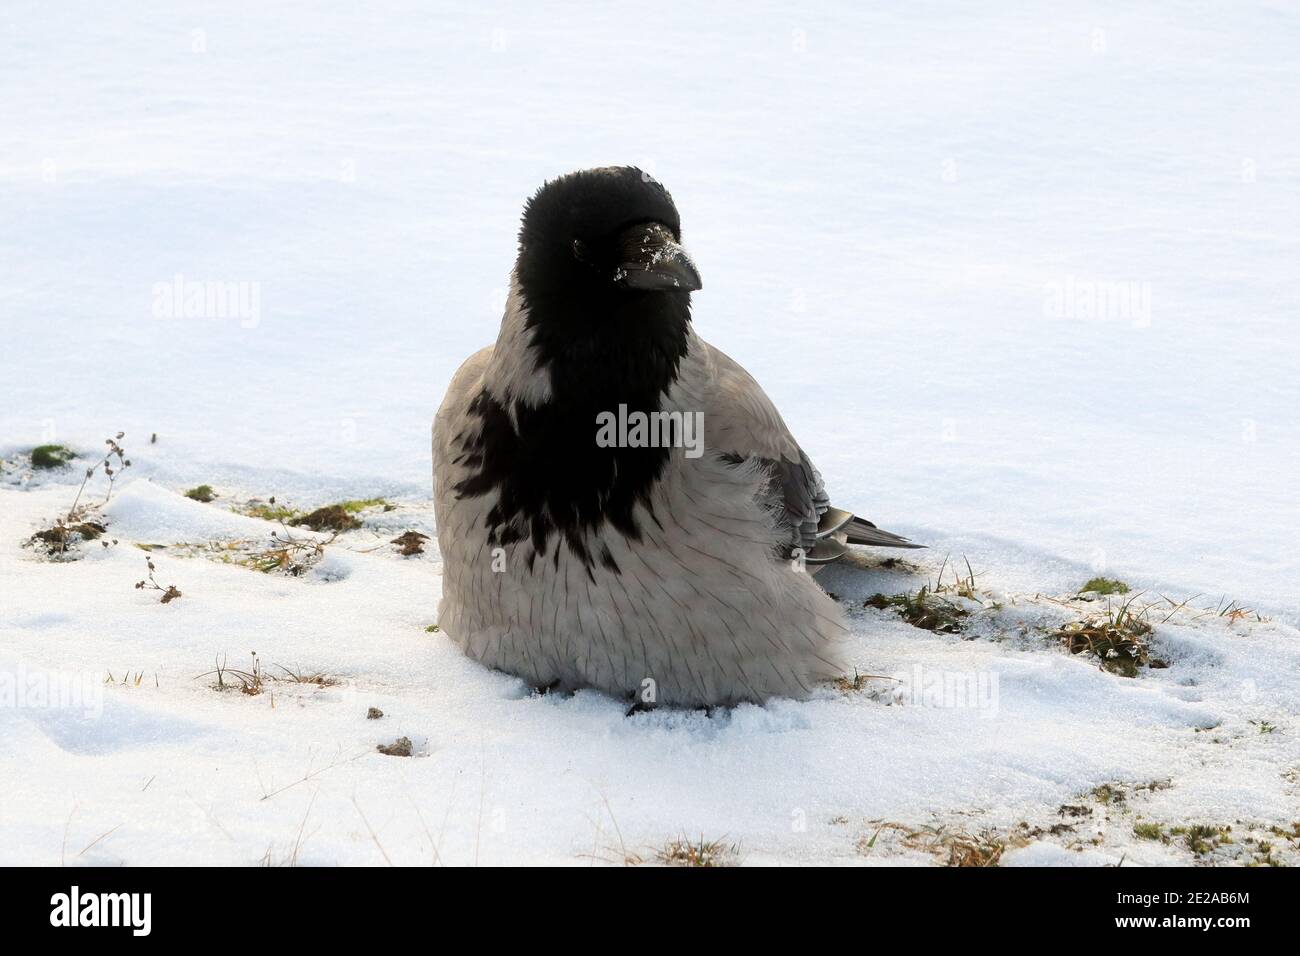 Jeune corbeau à capuche, corvus cornix, qui agacent ses plumes, perchée sur un sol enneigé pour conserver la chaleur lors d'une matinée hivernale froide. Banque D'Images